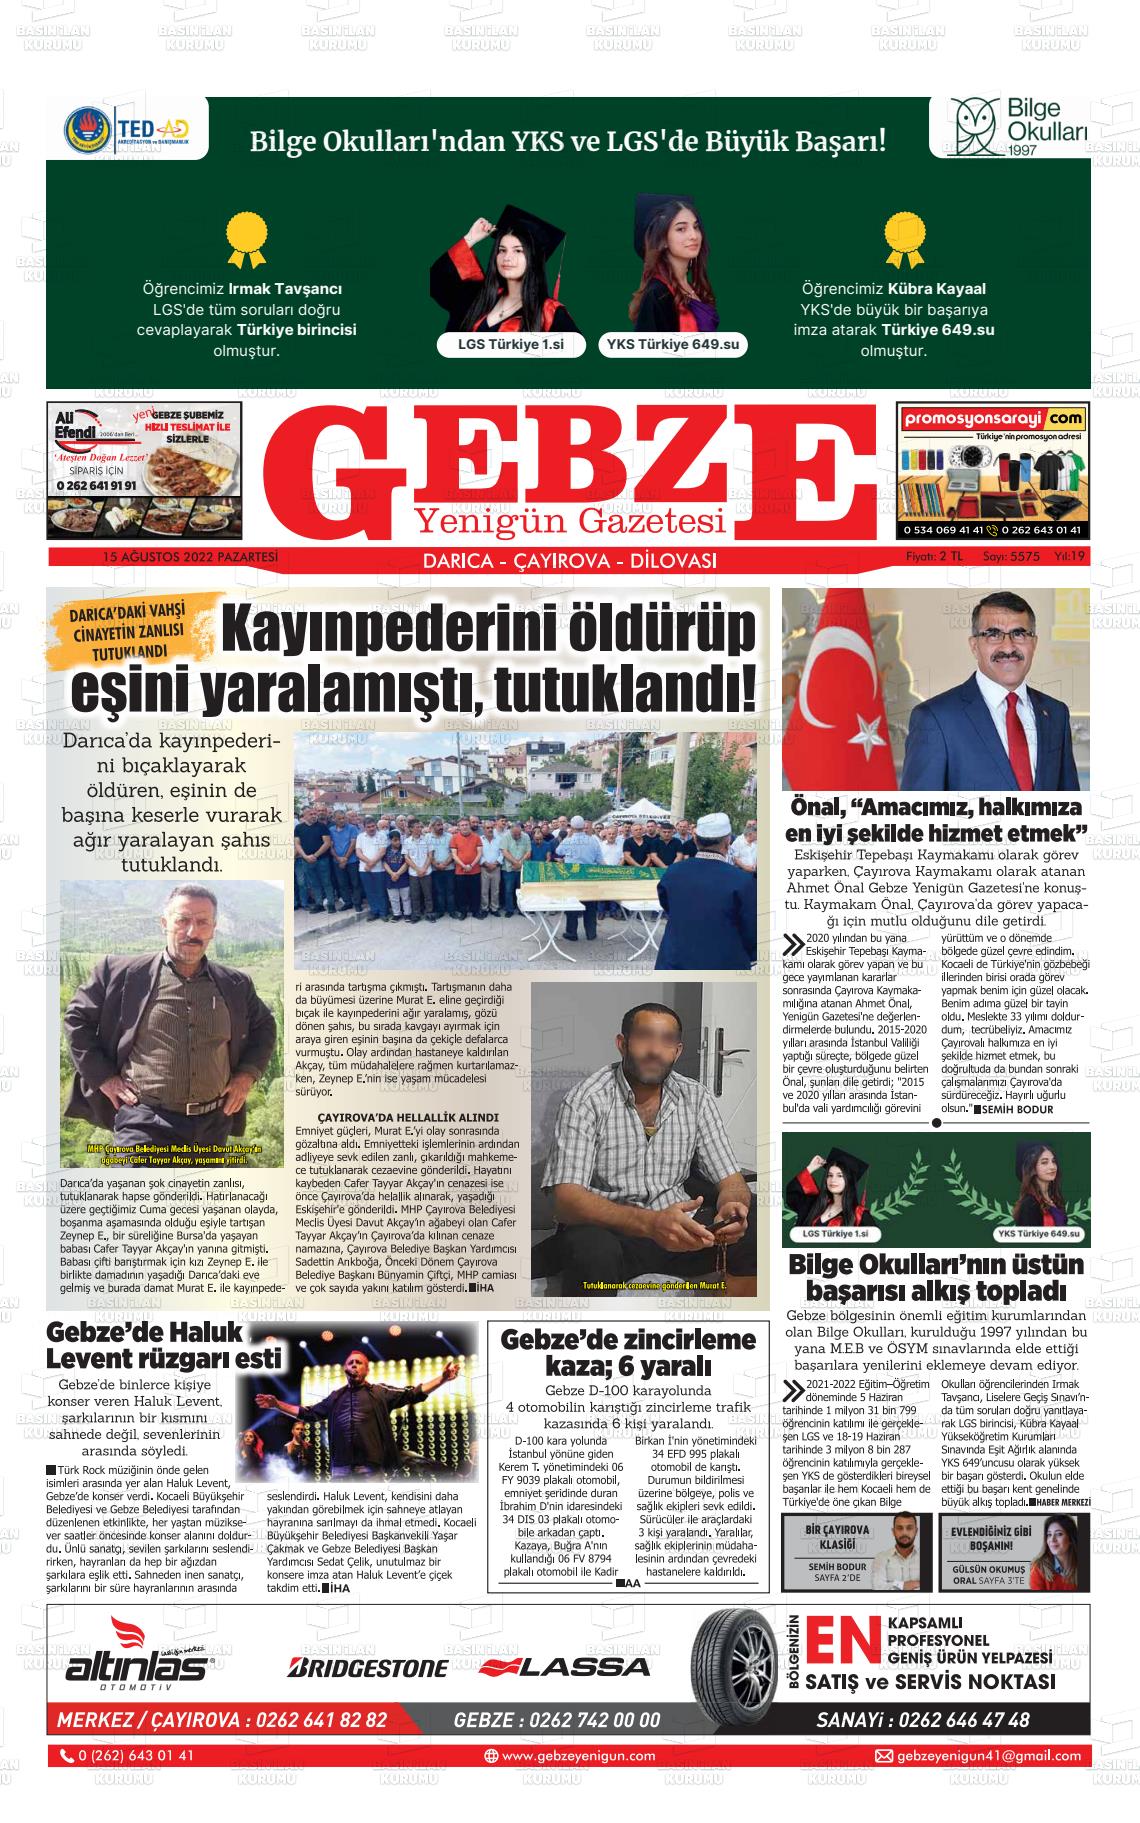 15 Ağustos 2022 Gebze Yenigün Gazete Manşeti